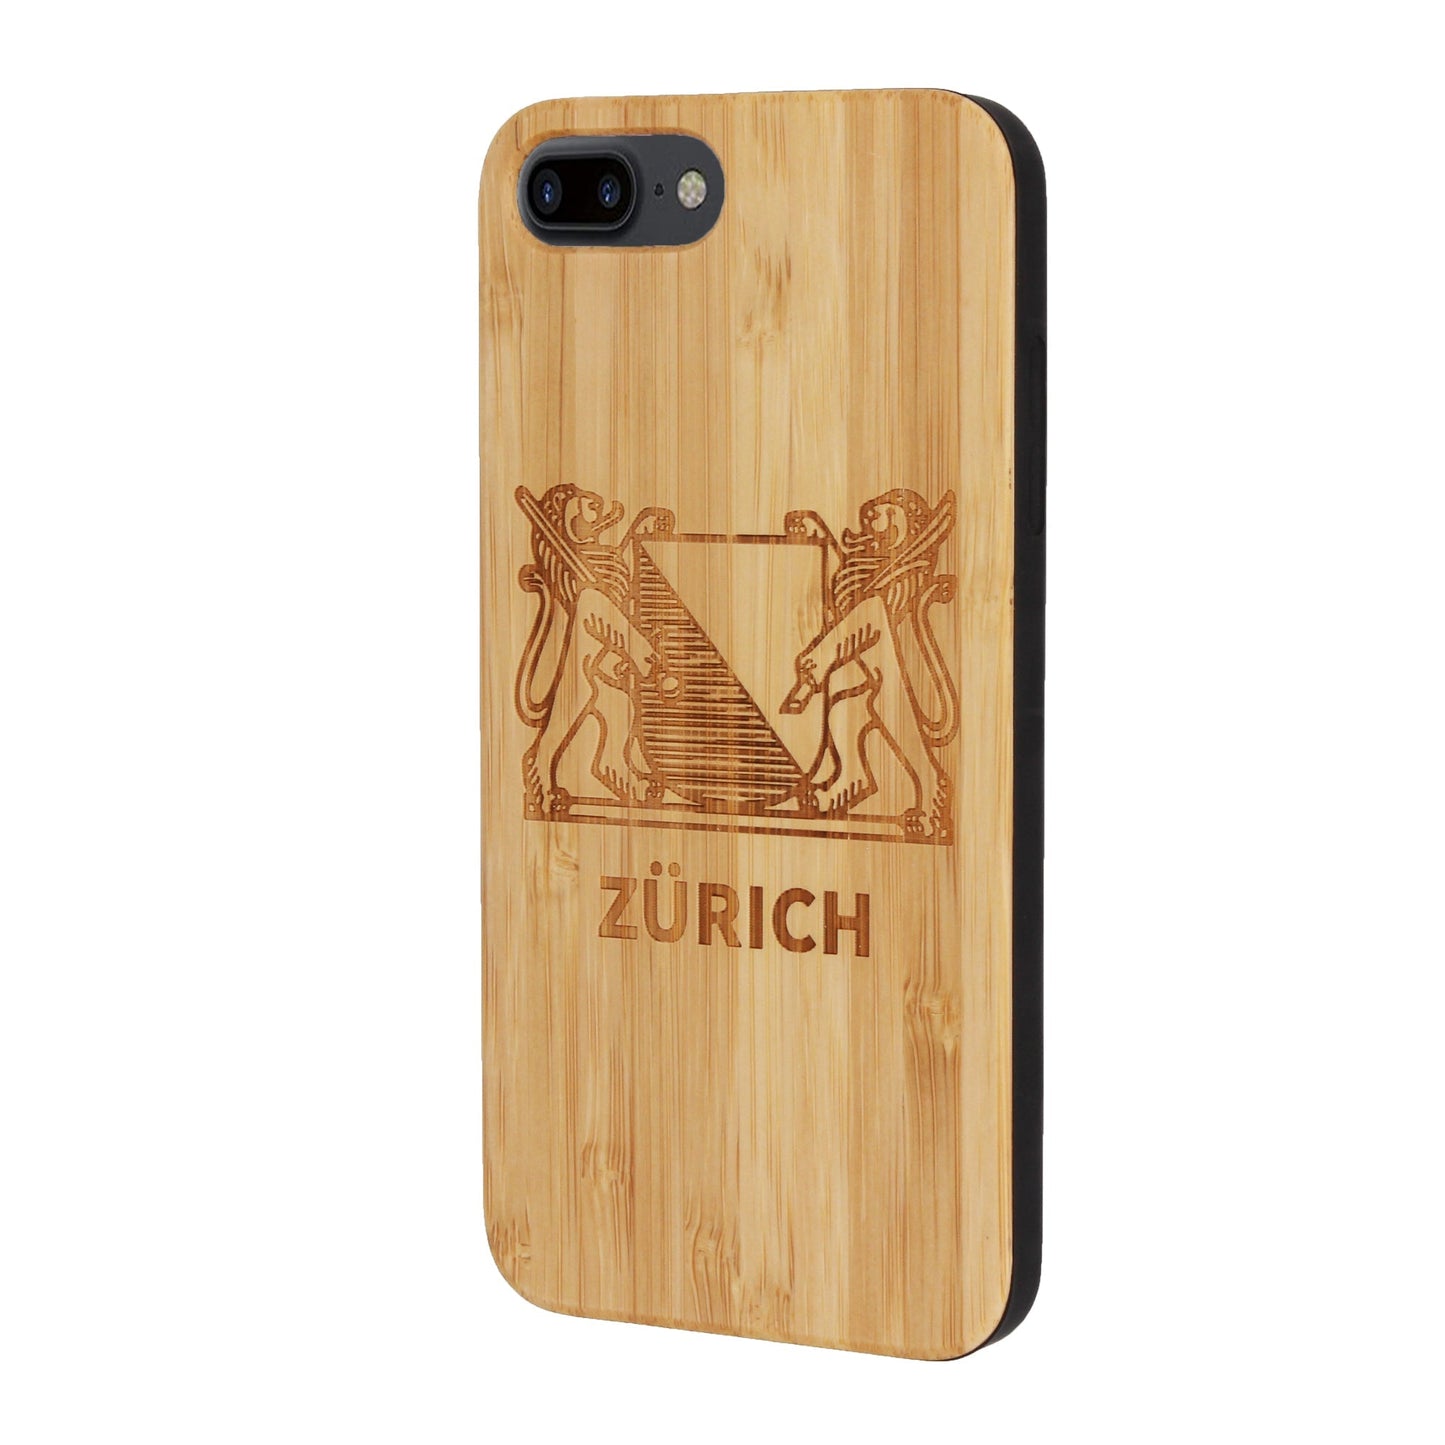 Zürich Wappen Eden Case aus Bambus für iPhone 6/6S/7/8 Plus